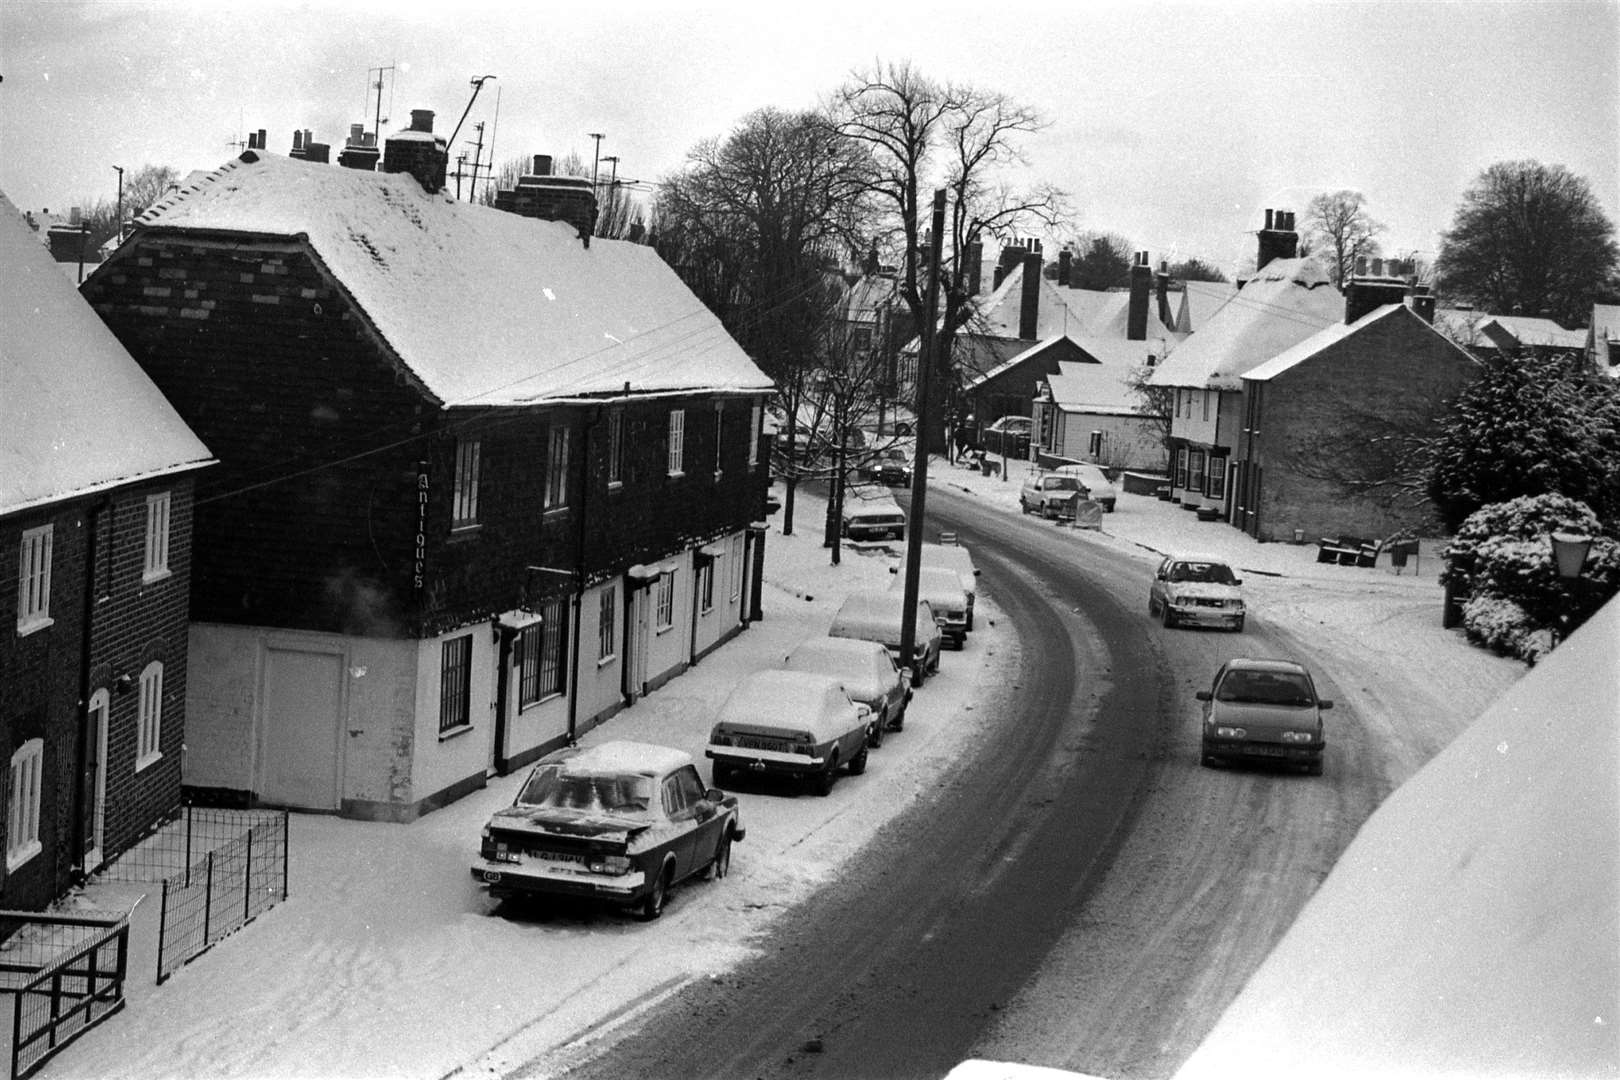 Snowy Wingham in January 1987